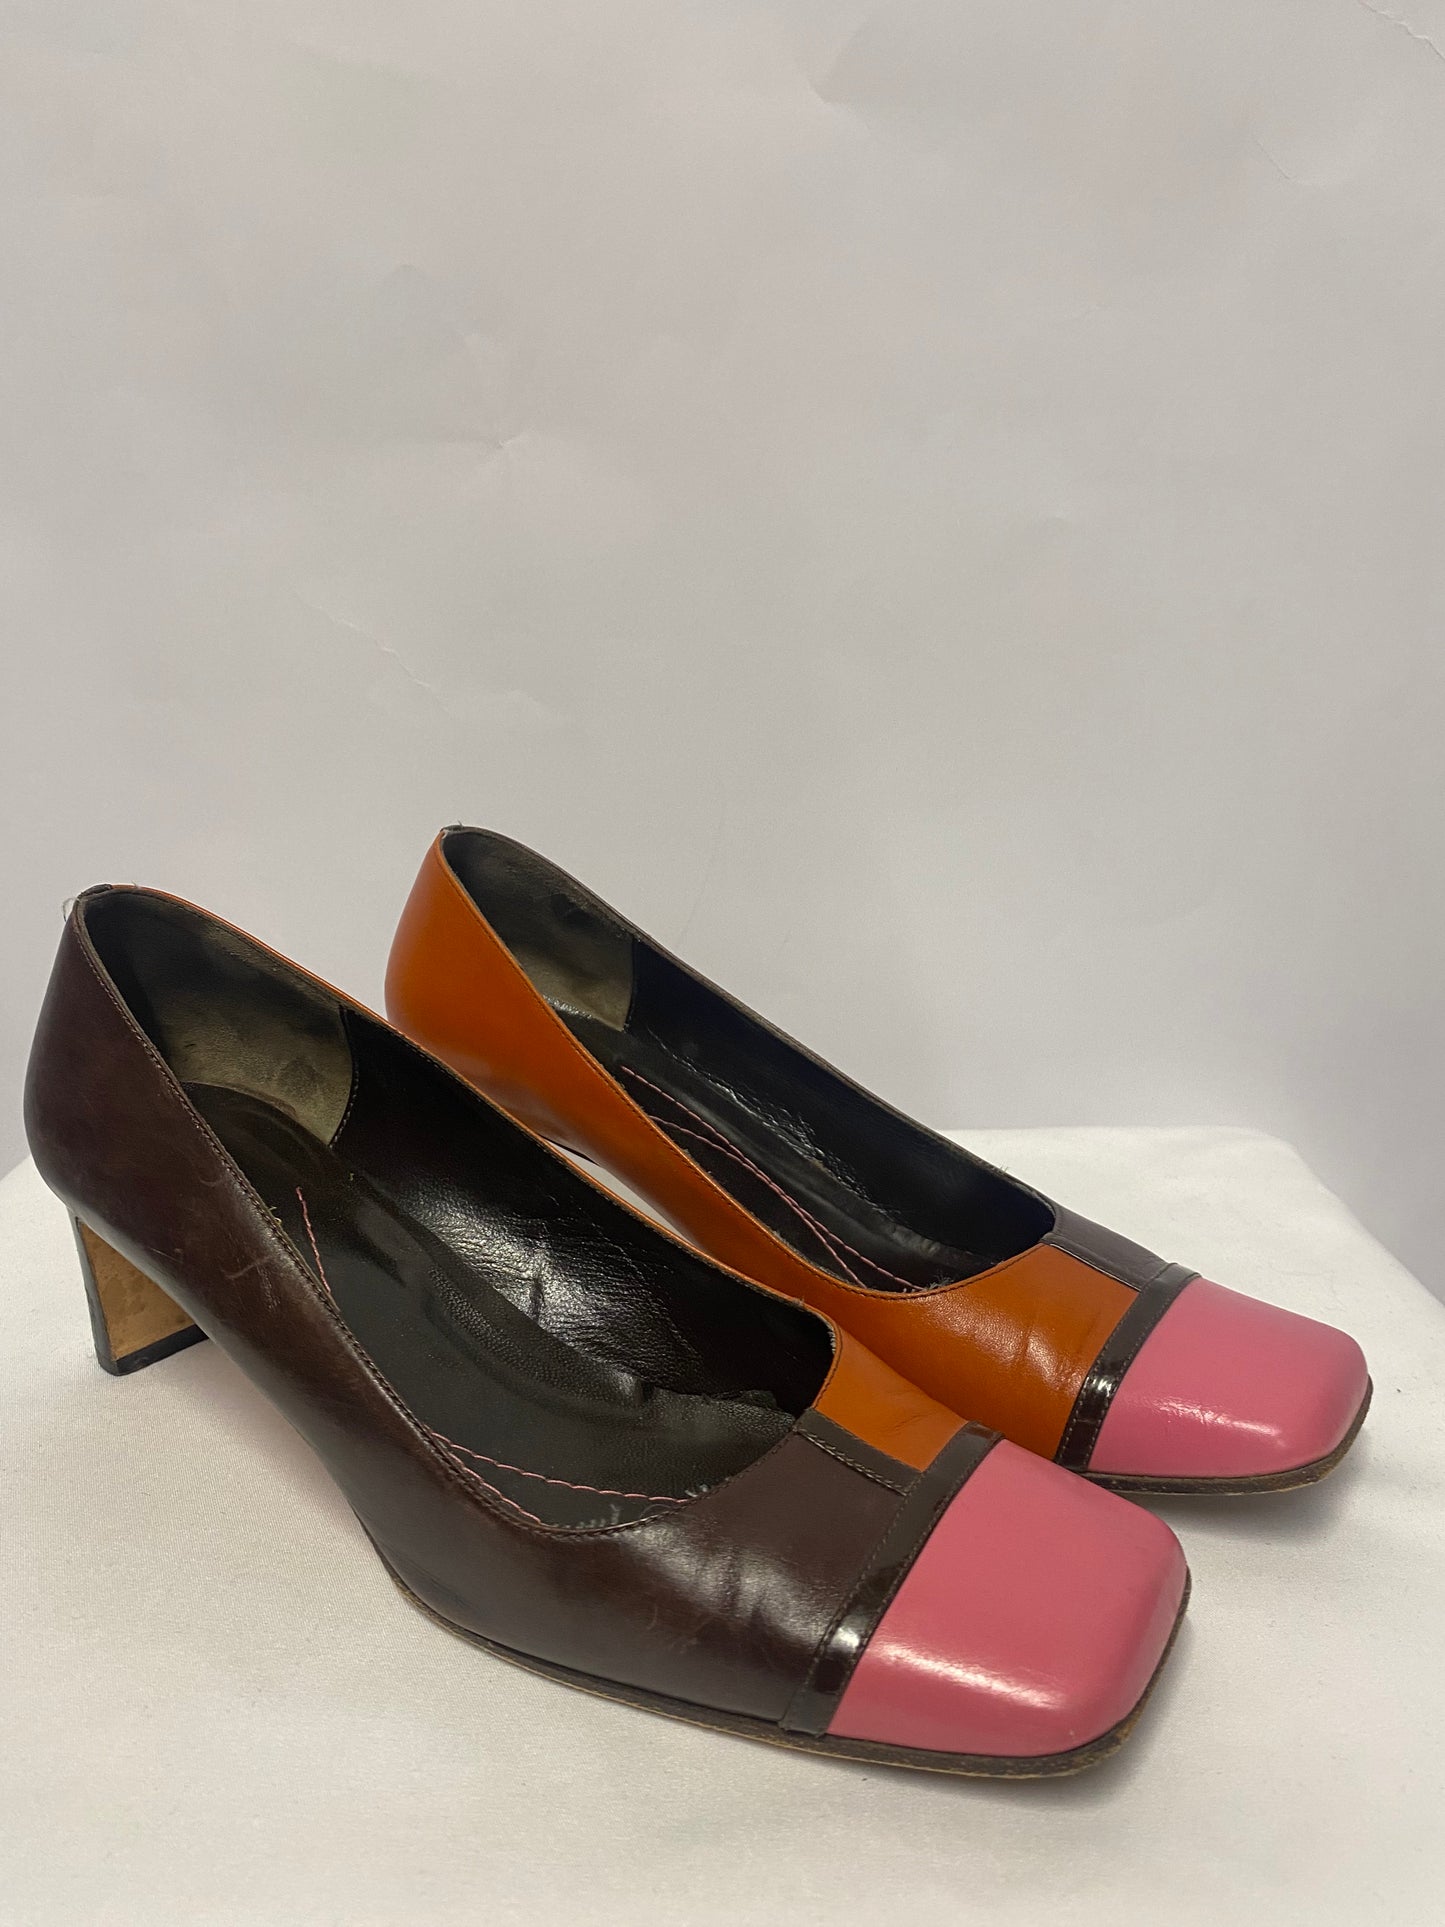 Kate Spade Pink and Orange Square Toe Low Block Heel 8.5